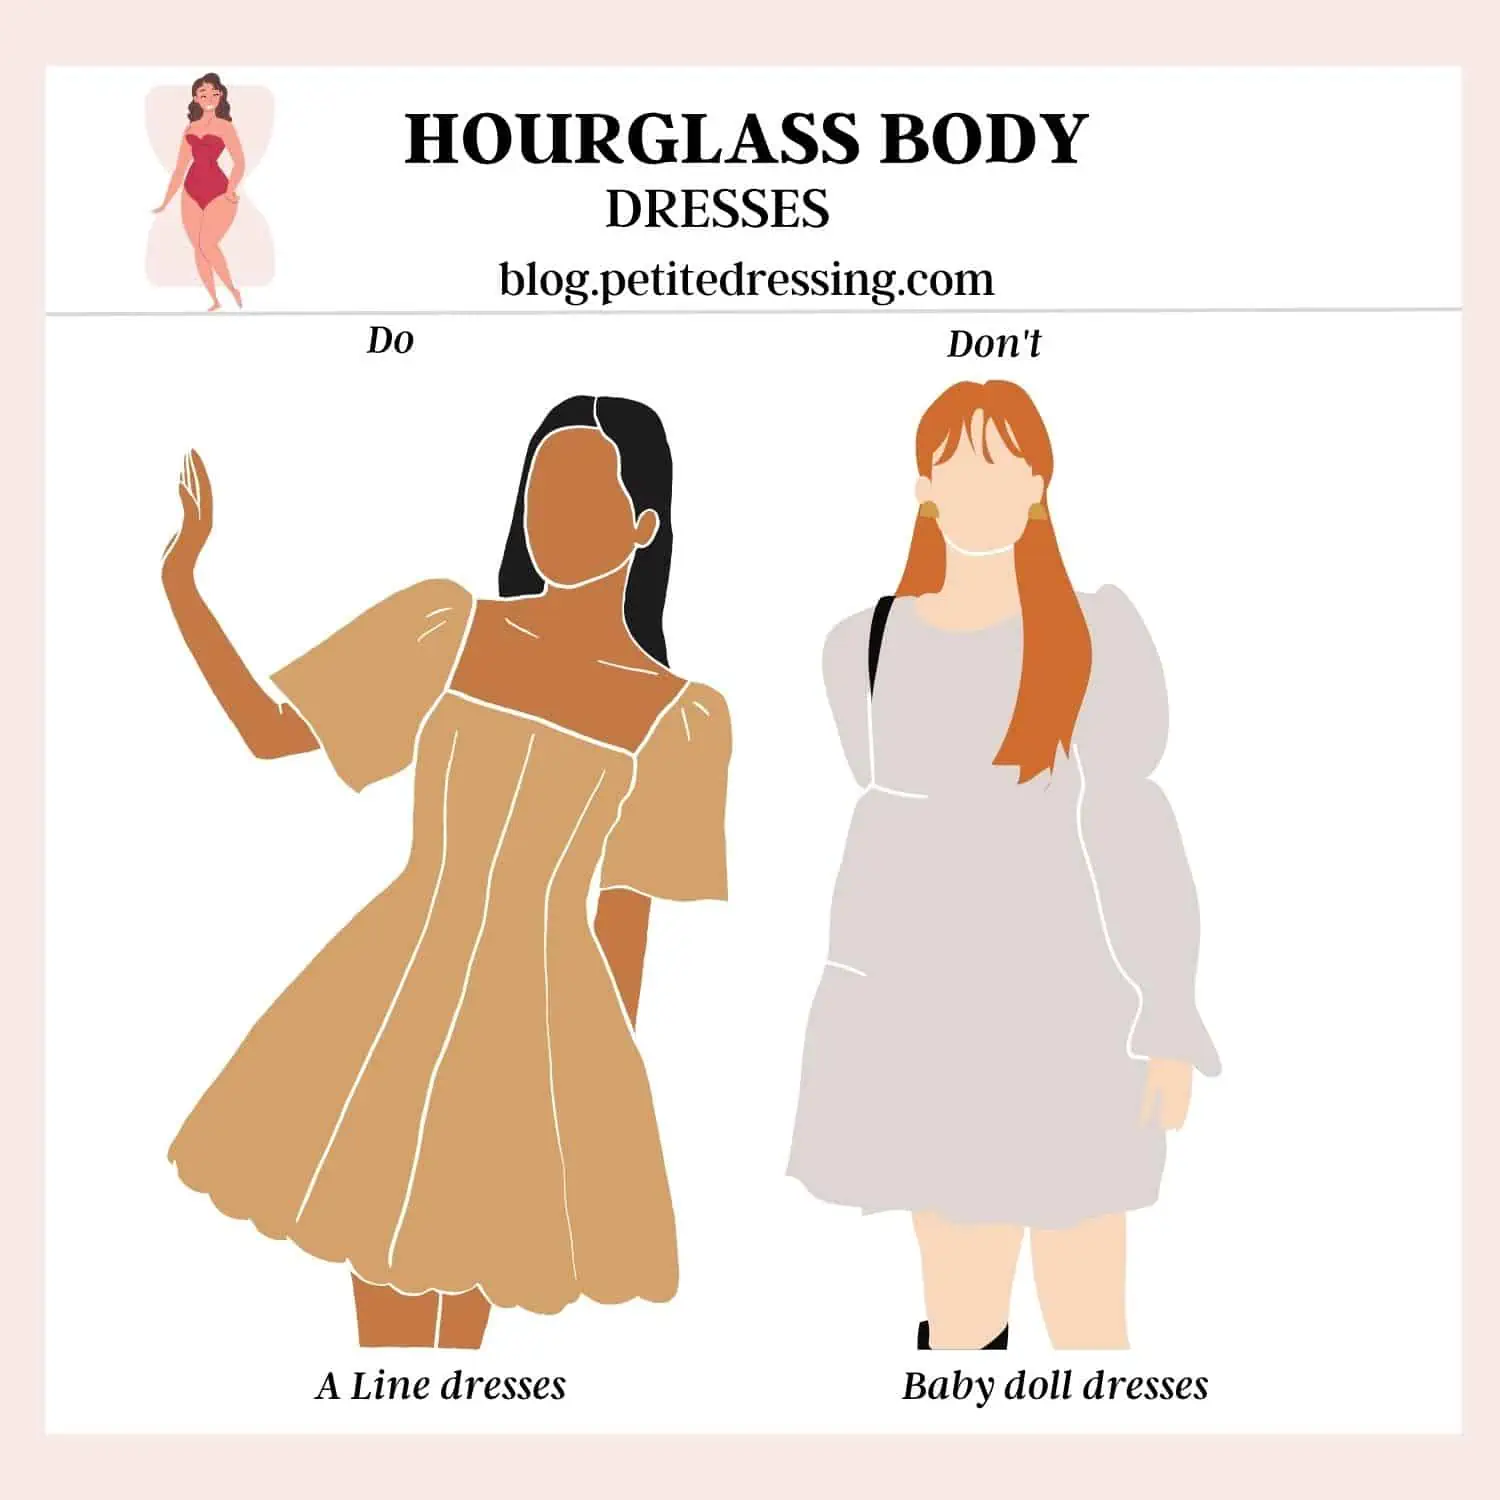 A Line dresses for hourglass dress